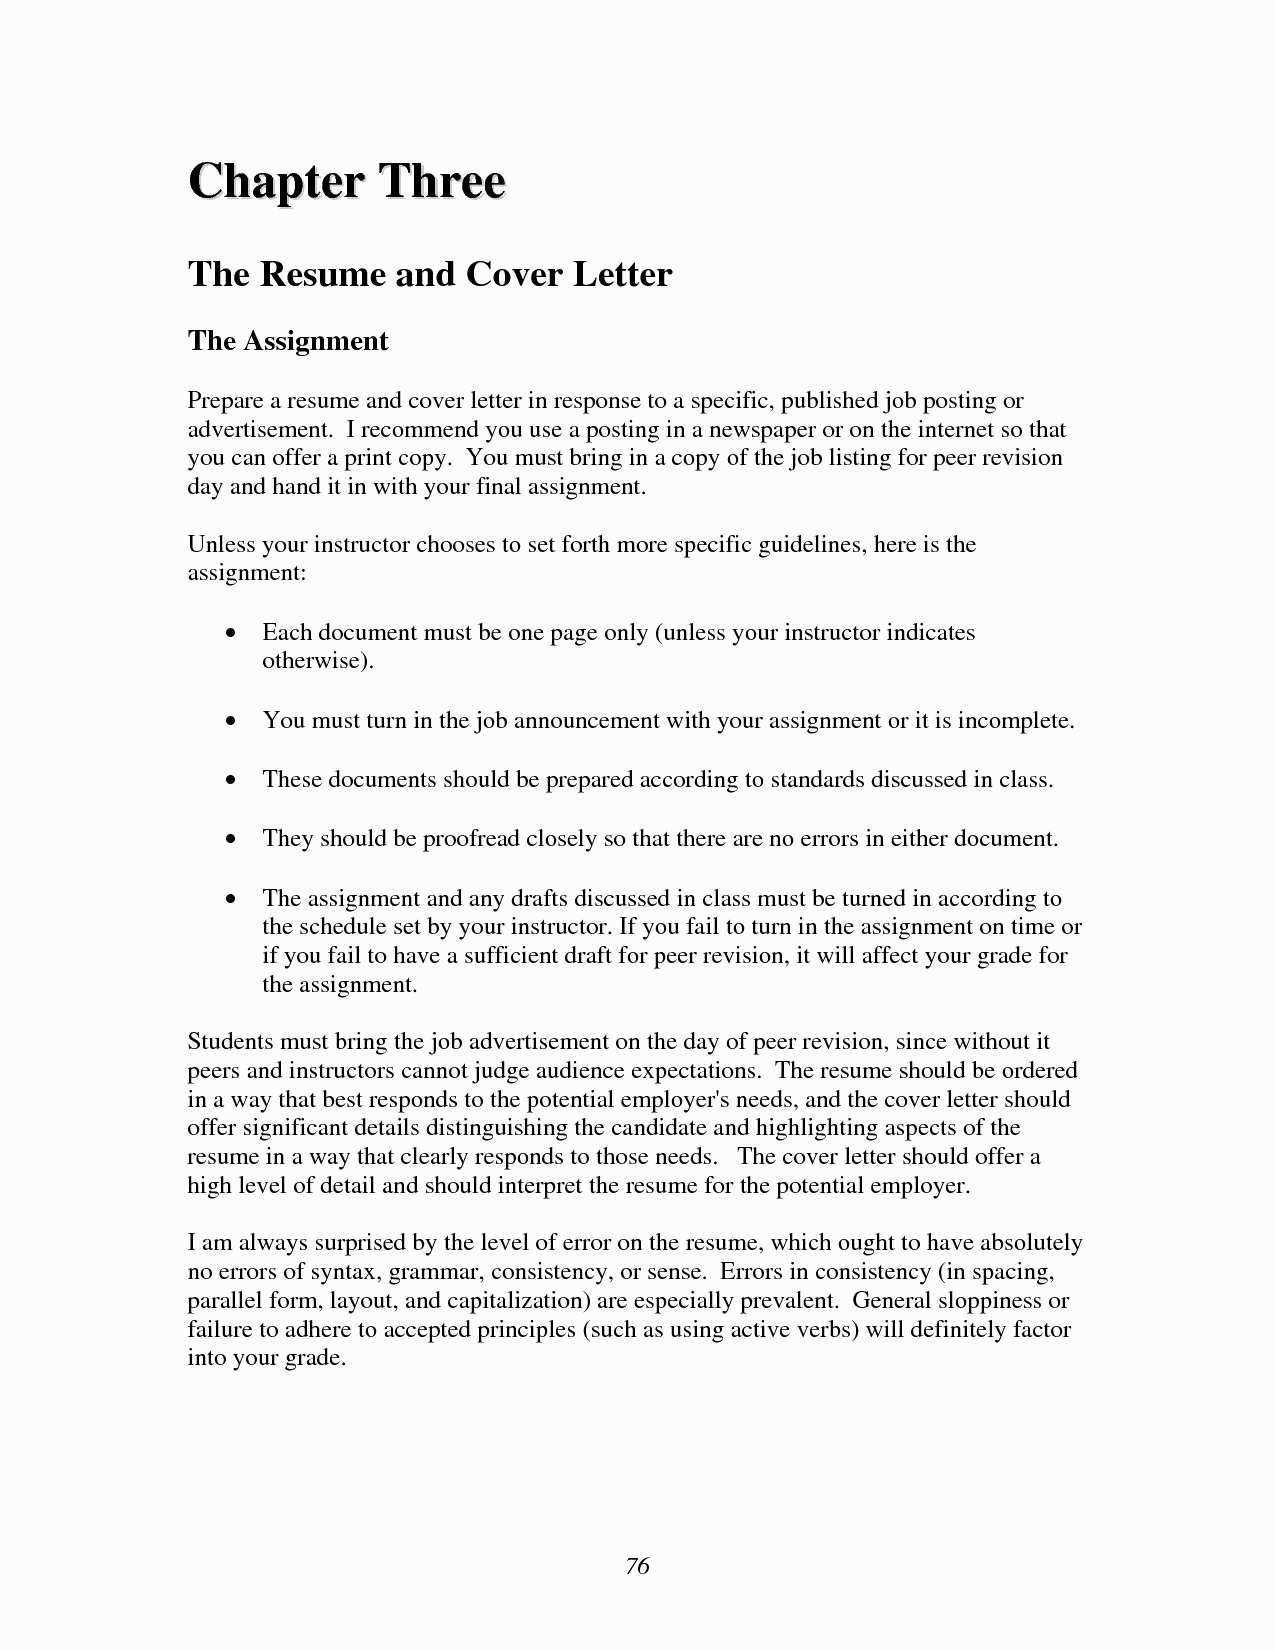 Simple Cover Letter Template for Job Application - Simple Cover Letter for Job Application New Unique Job Fer Letter